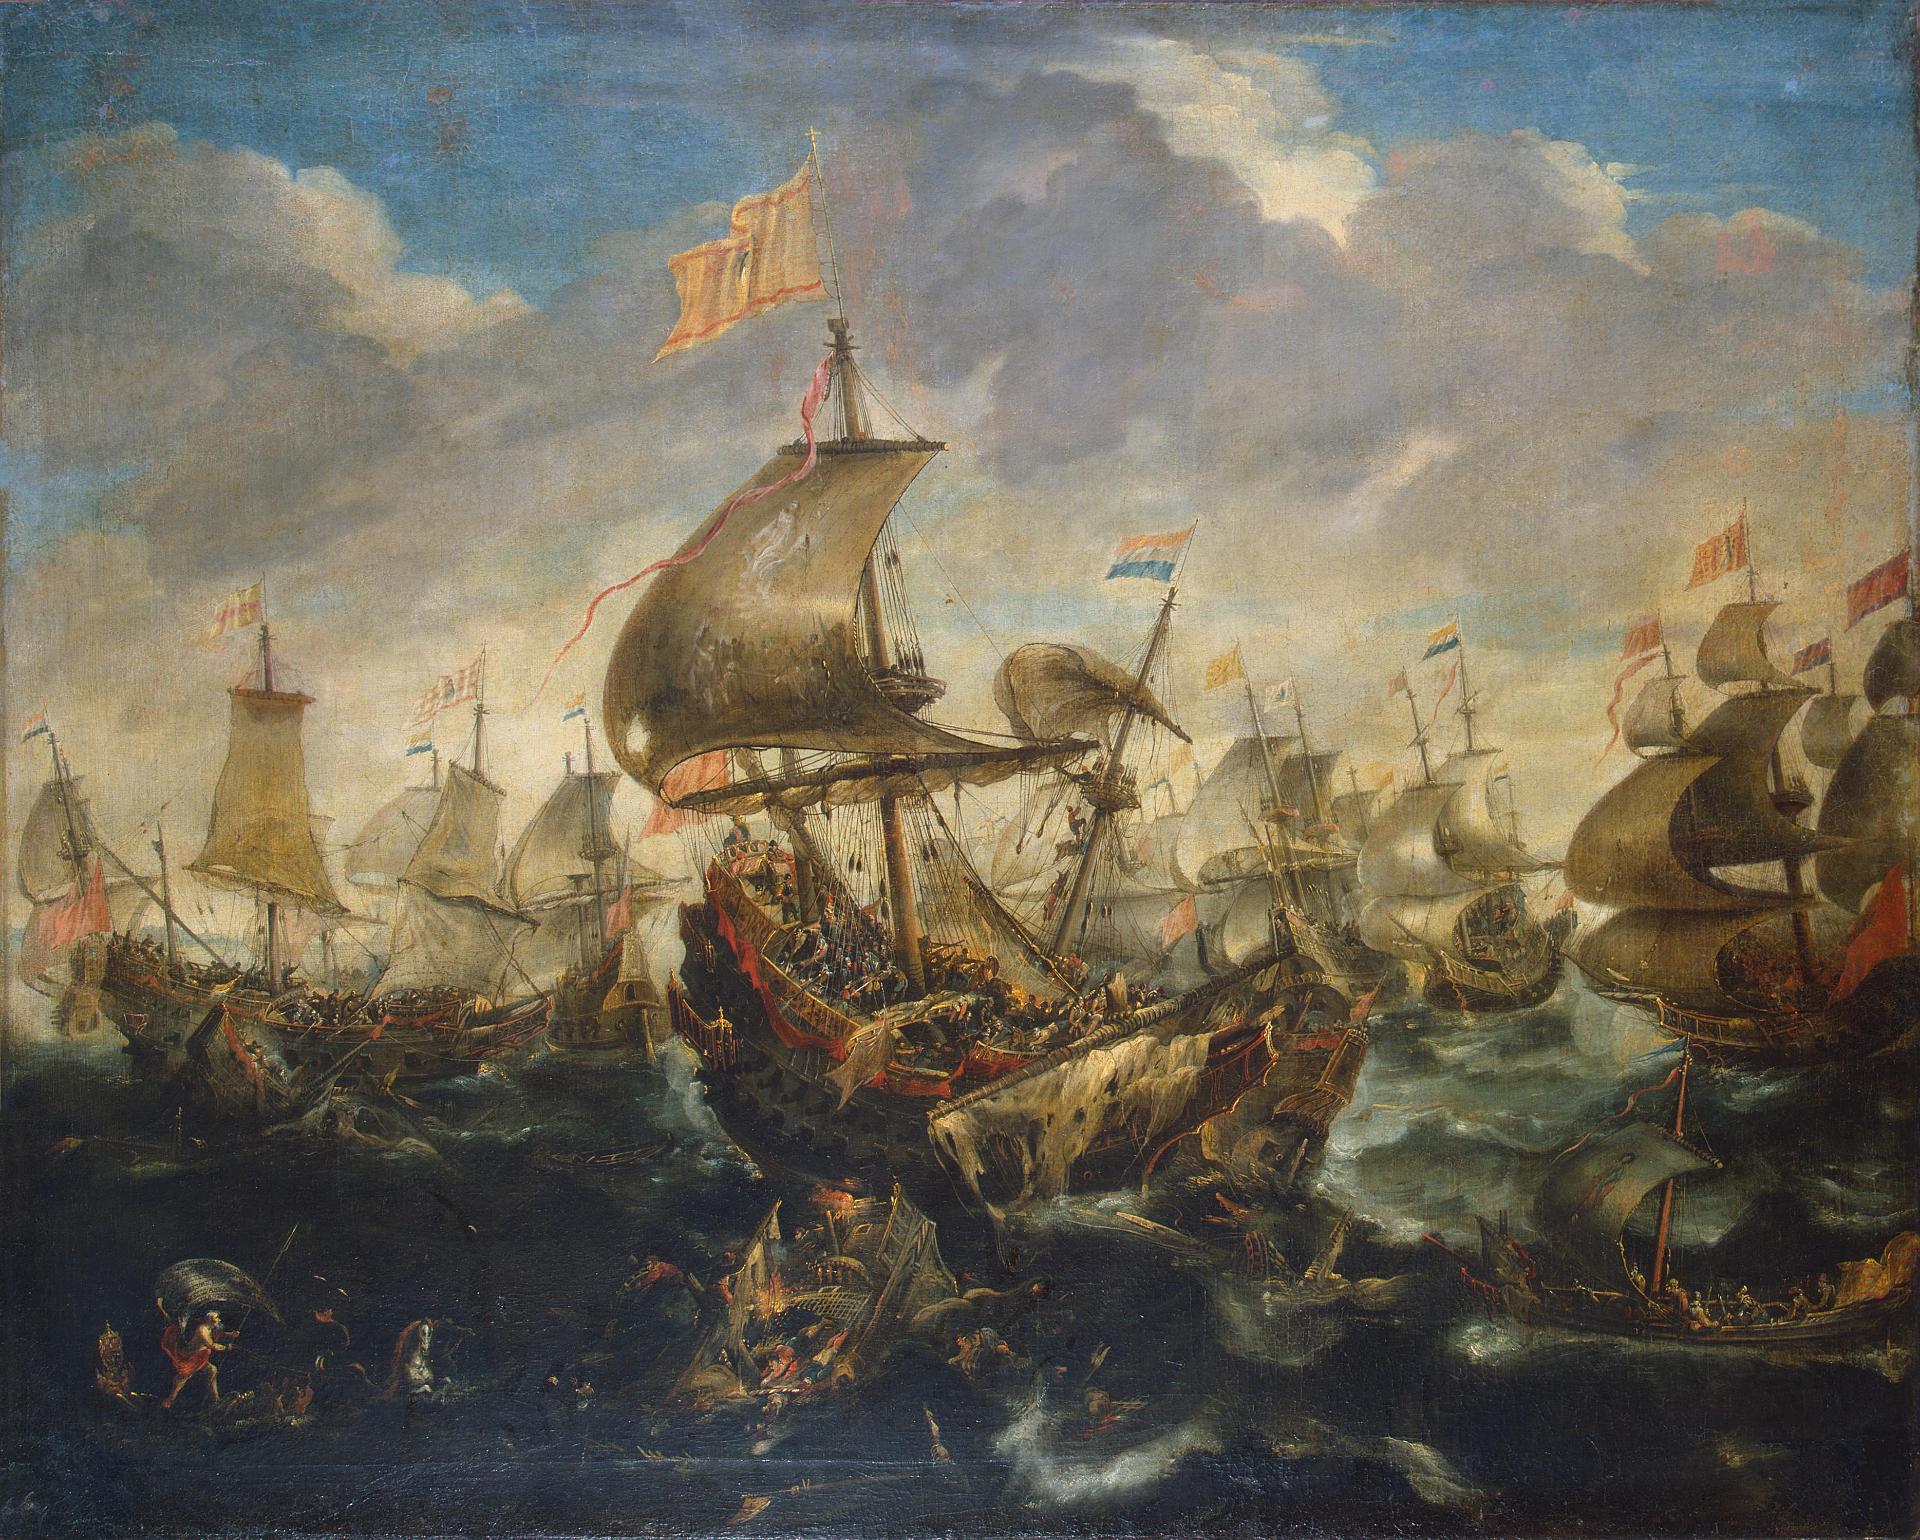 Андрис ван Эртфельт. "Сражение испанского флота с кораблями восставшей Голландии в мае 1573 года во время осады Харлема". Середина 1620-х. Эрмитаж, Санкт-Петербург.